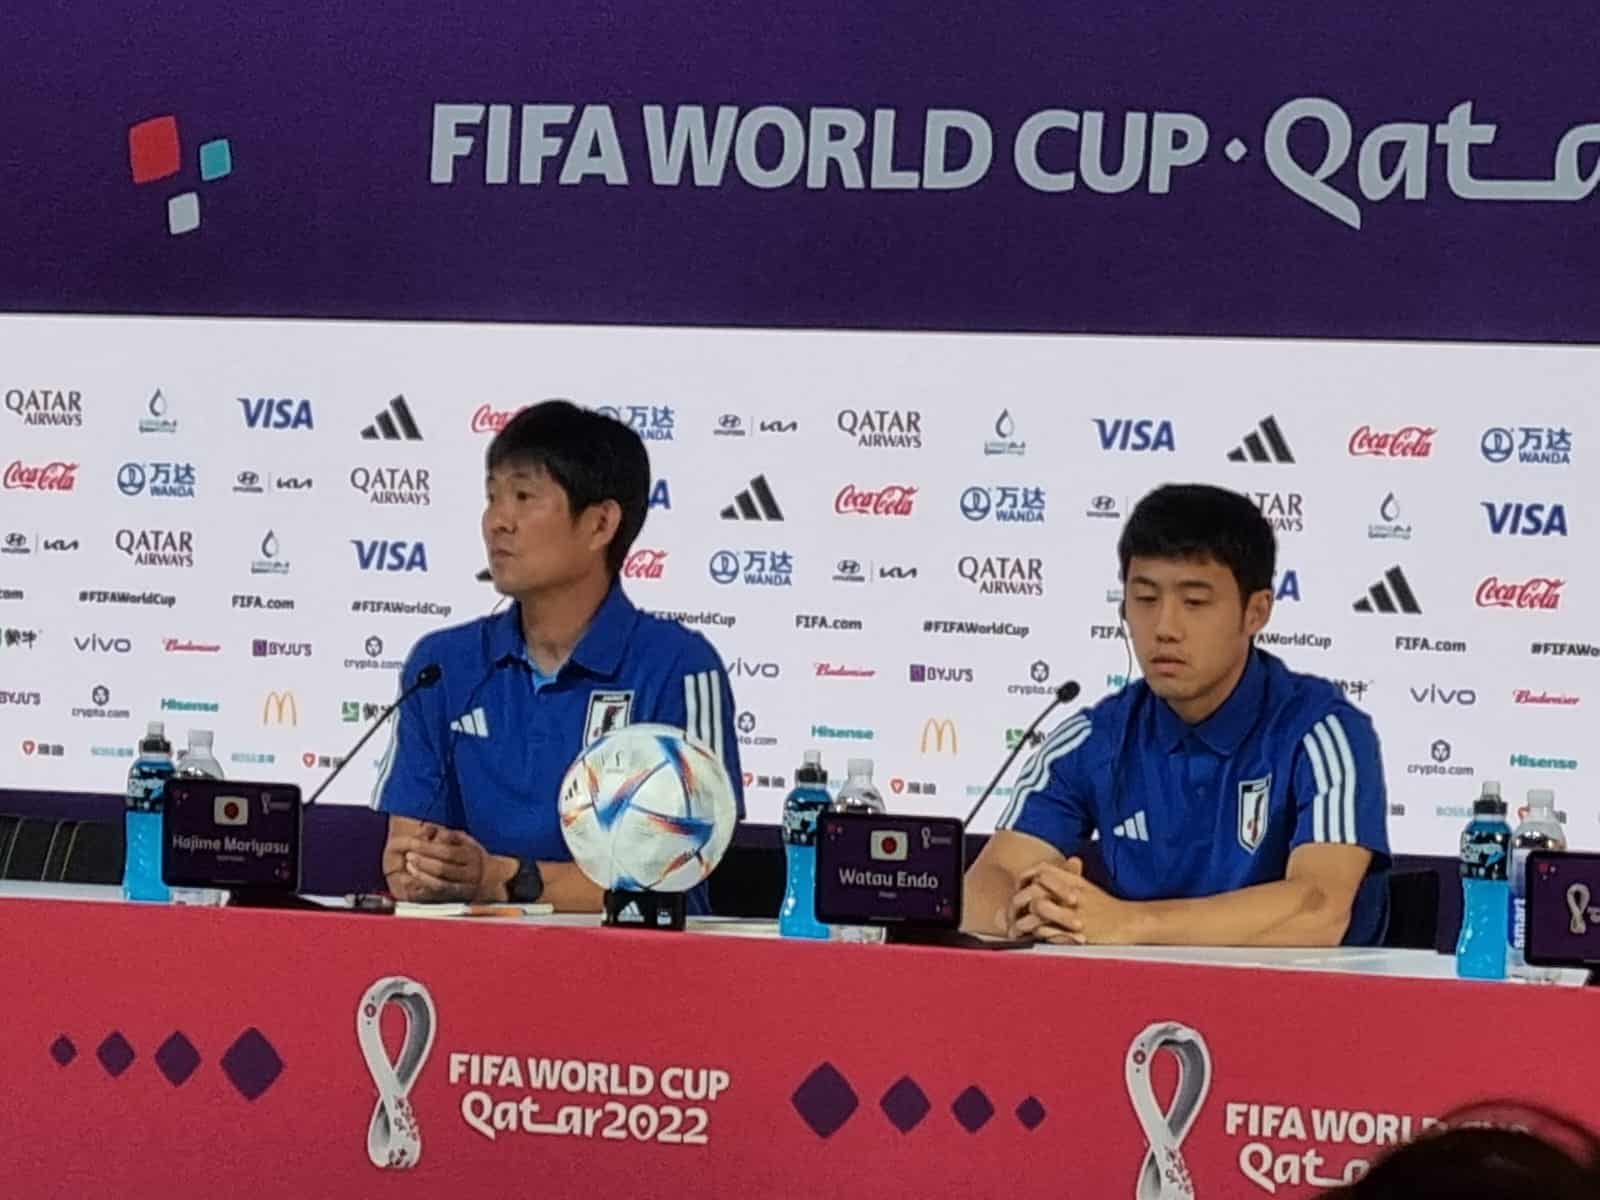 Técnico de Japón no se confía de Costa Rica a pesar del 7 a 0: “tiene una defensa muy sólida”